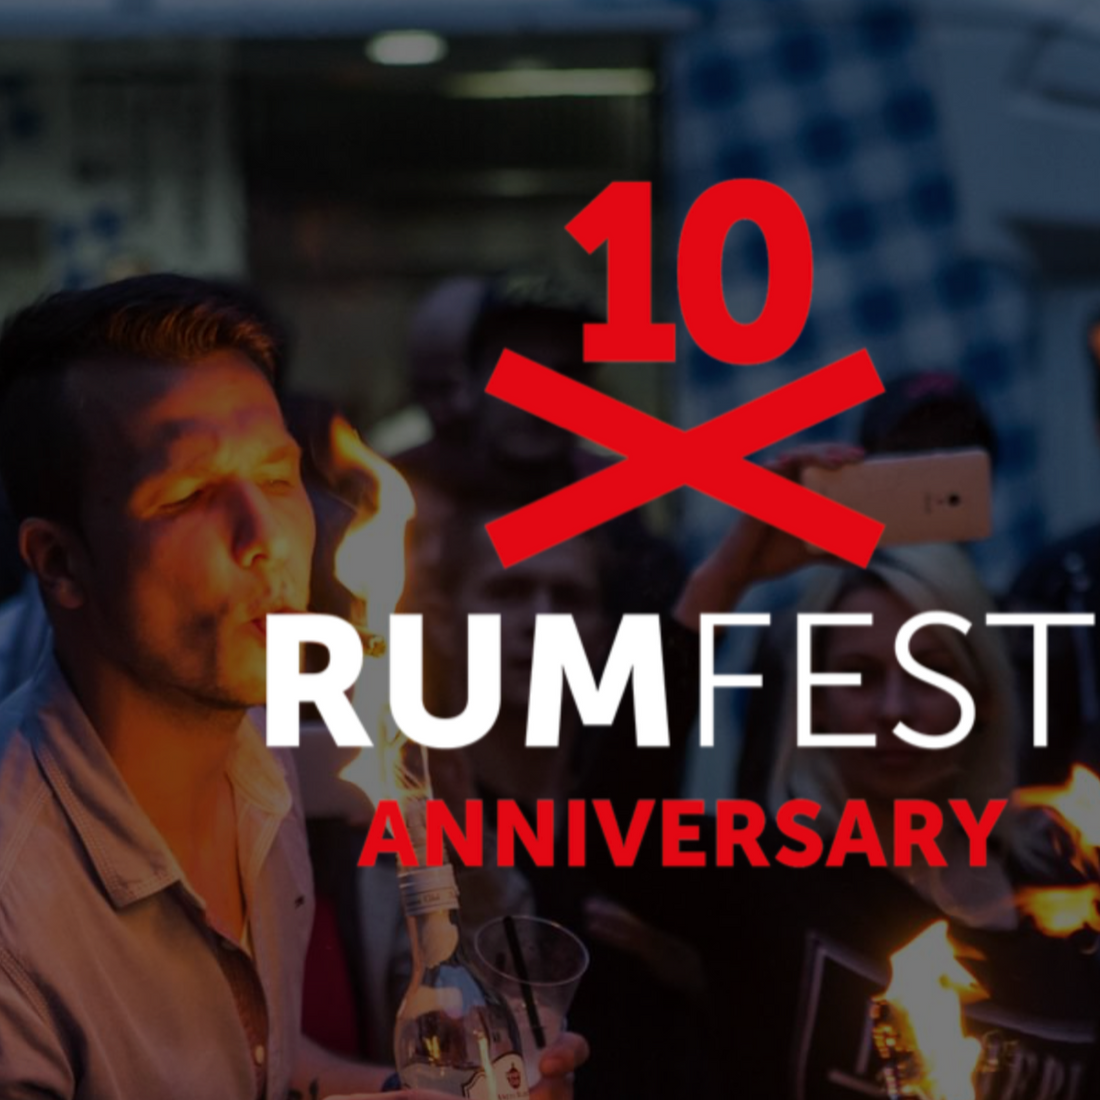 Wstęp na Rumfest jest bezpłatny przy zakupach powyżej 1500 CZK